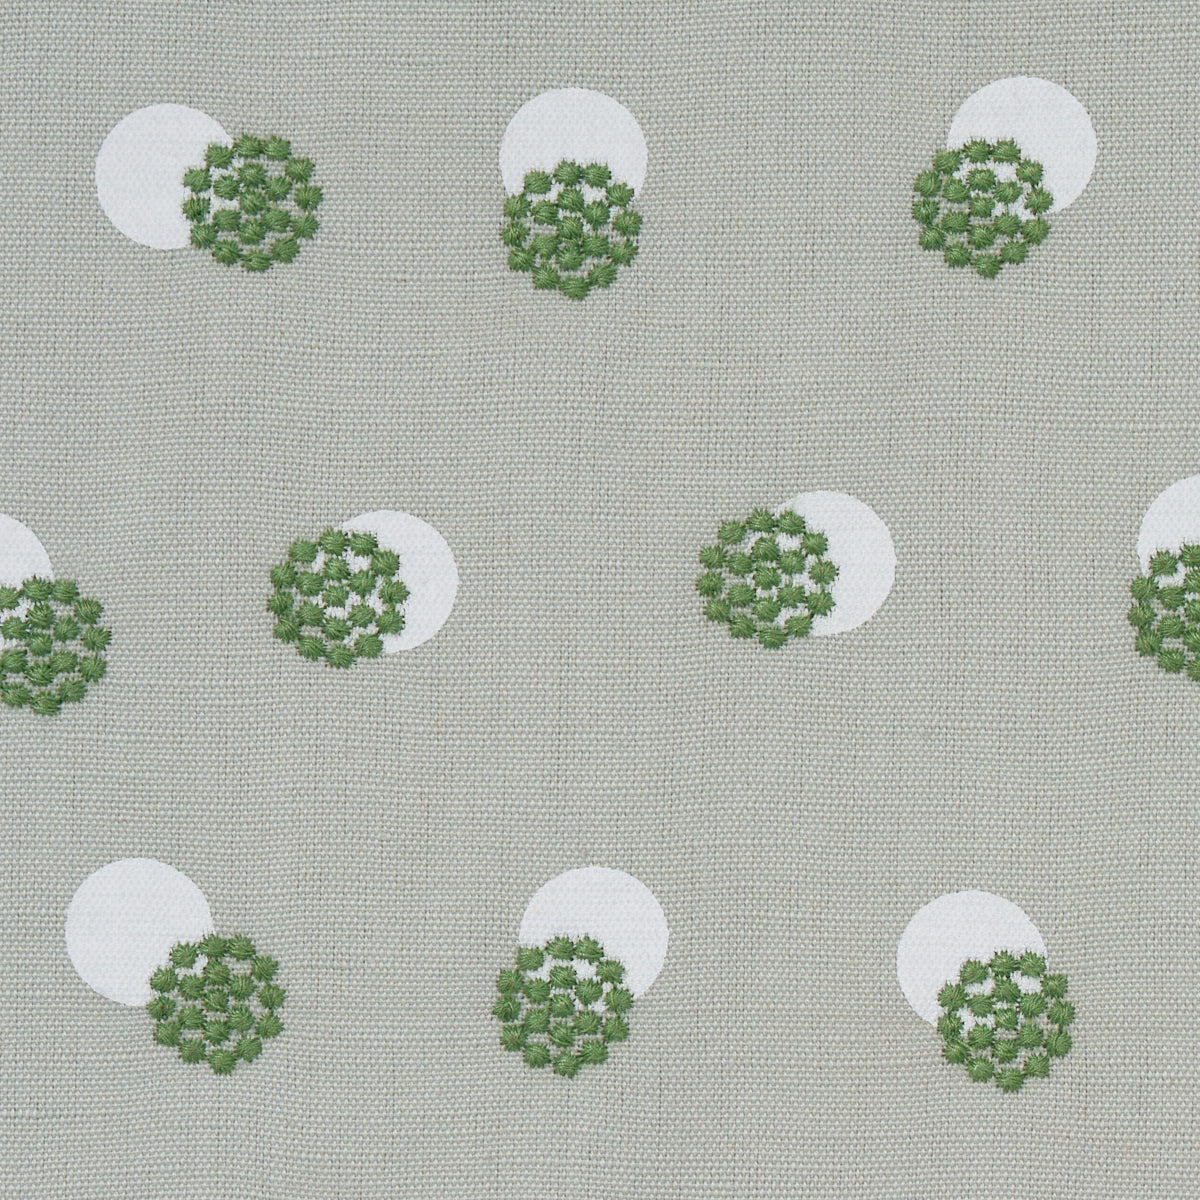 Purchase 81842 | Bouquet Toss, Green - Schumacher Fabric